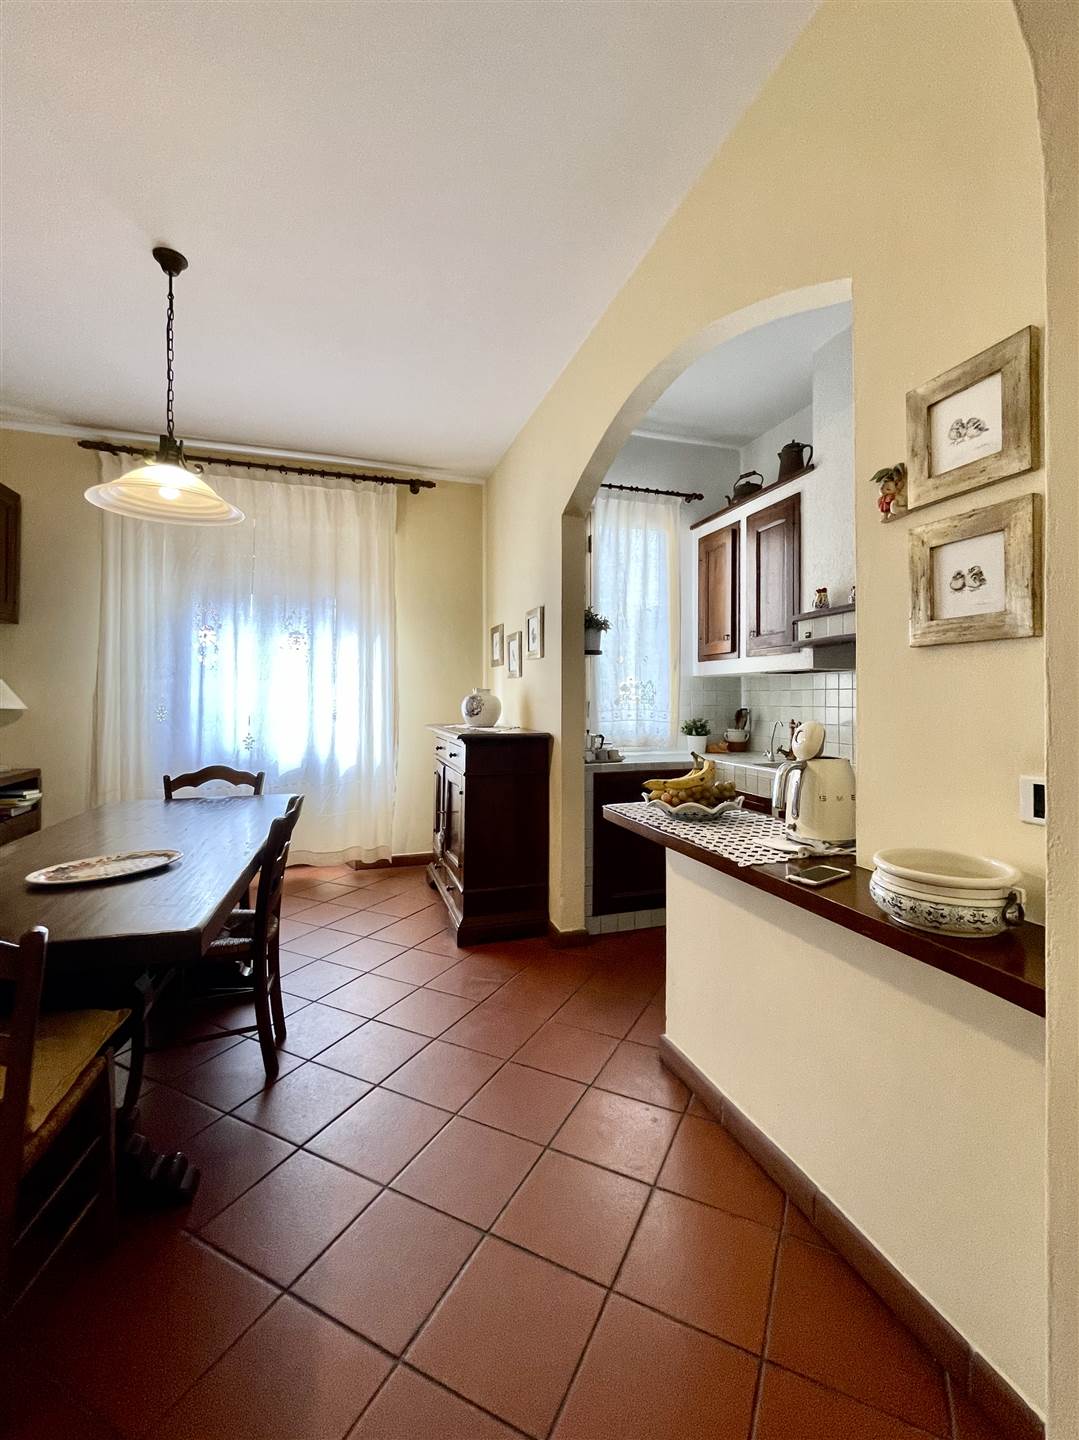 Appartamento indipendente in ottime condizioni in zona Zarini a Prato